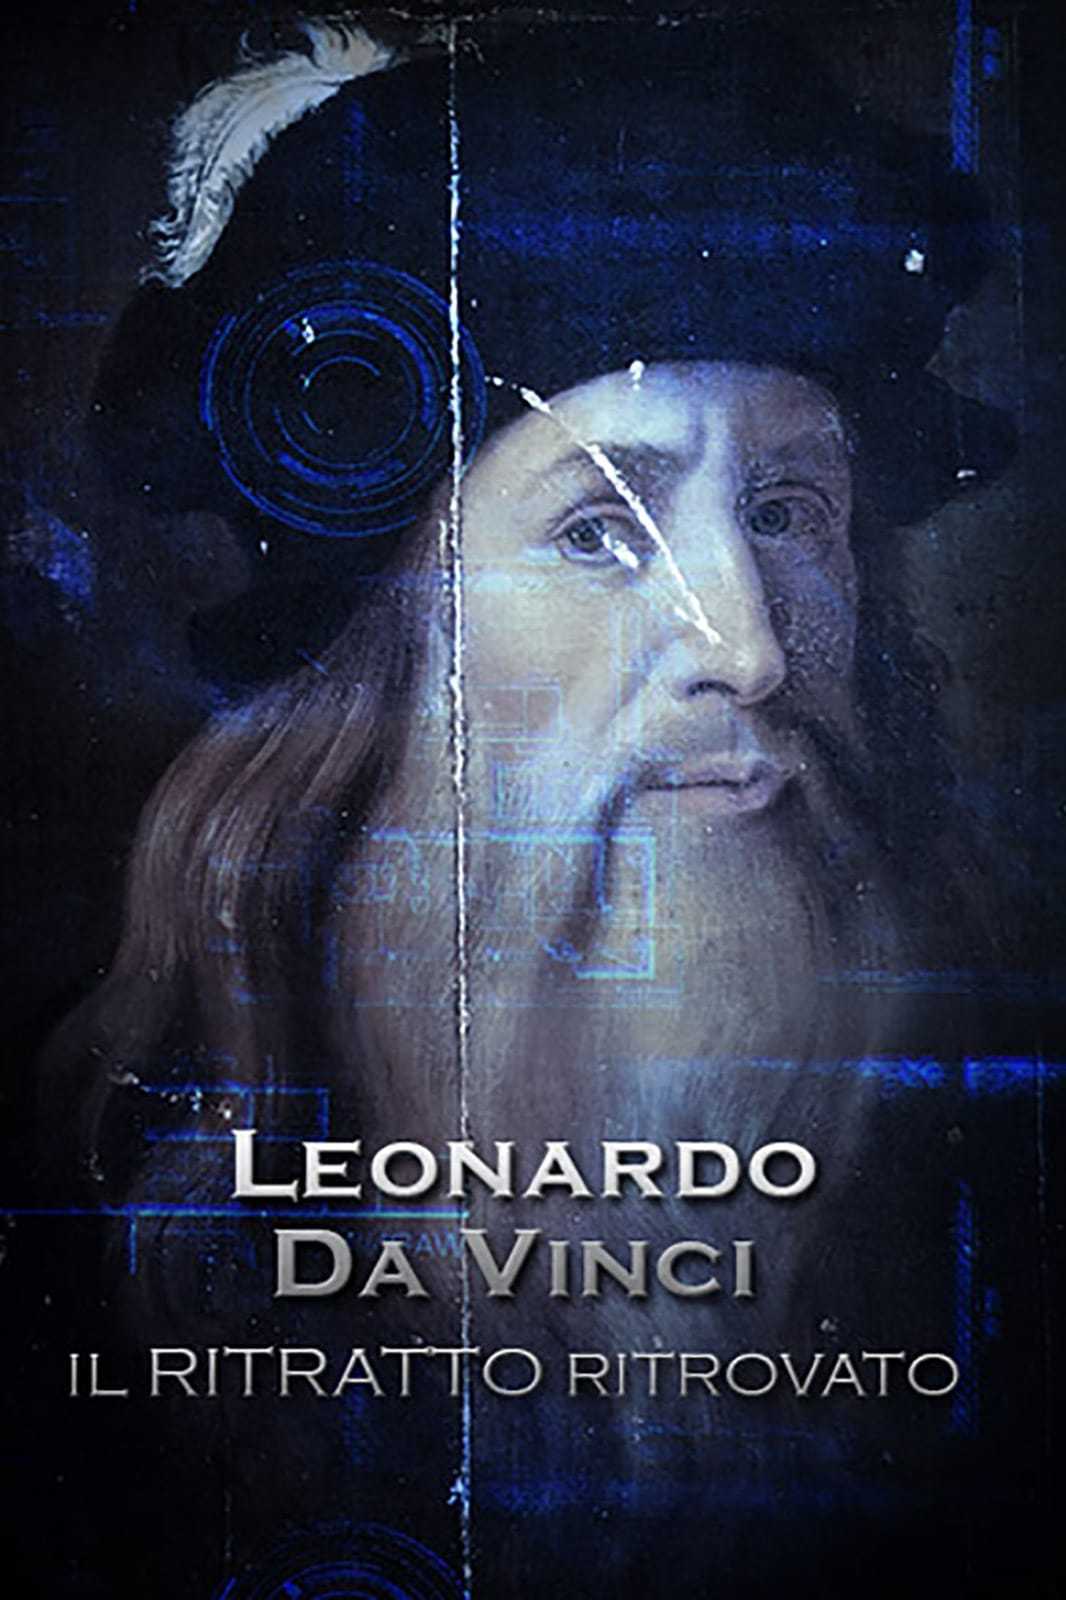 Leonardo Da Vinci - Il ritratto ritrovato in streaming